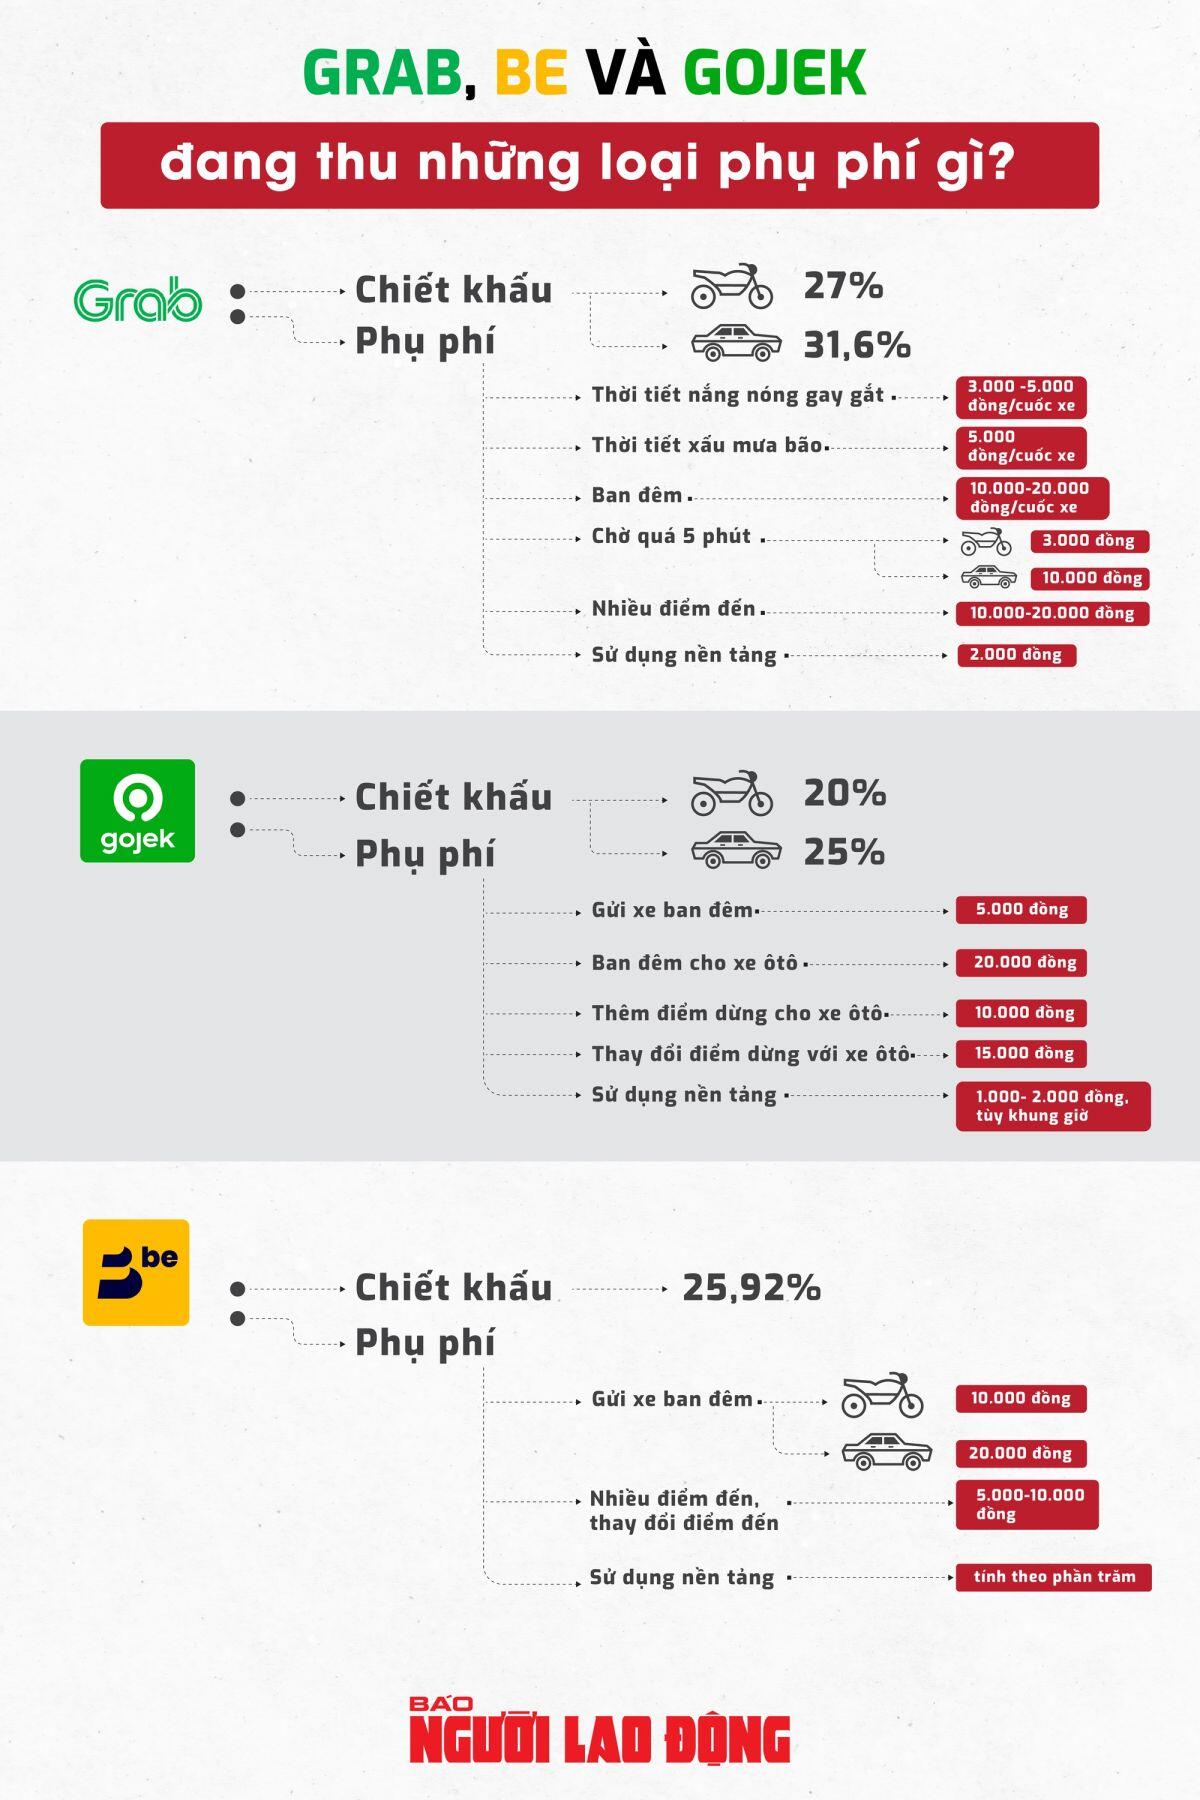 Grab, Be và Gojek đang thu những loại phụ phí gì?